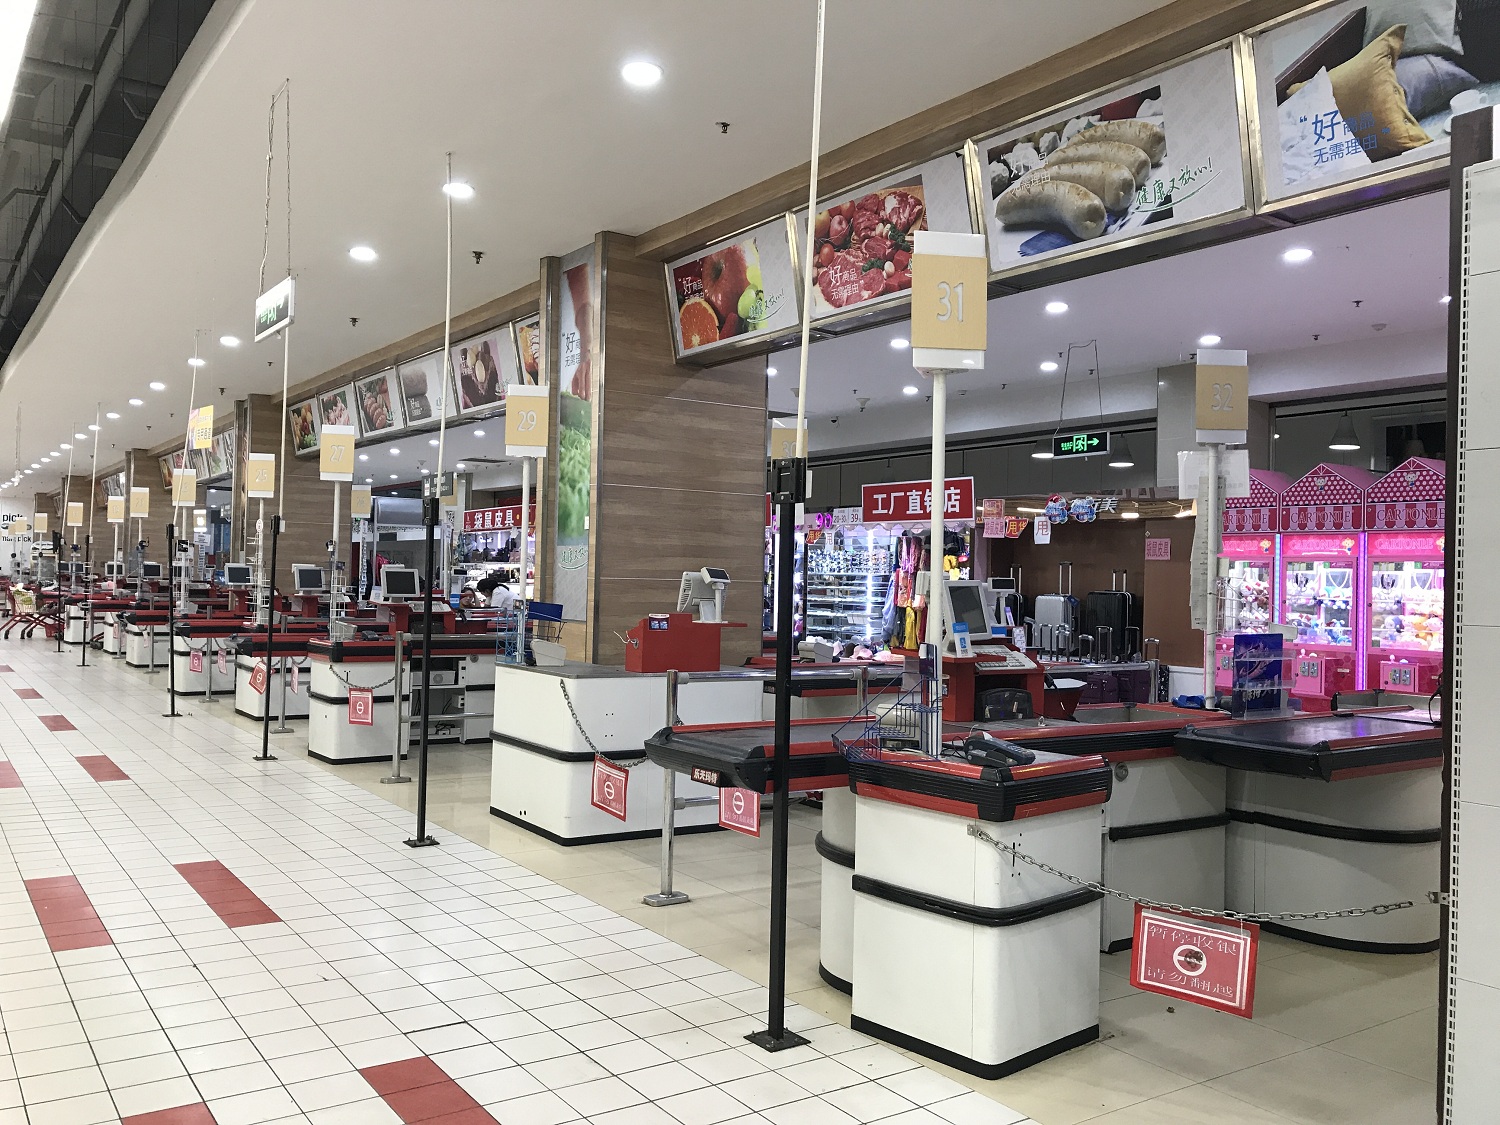 反导系统而遭到中国民众抵制,致使在华经营的乐天玛特超市业绩惨淡